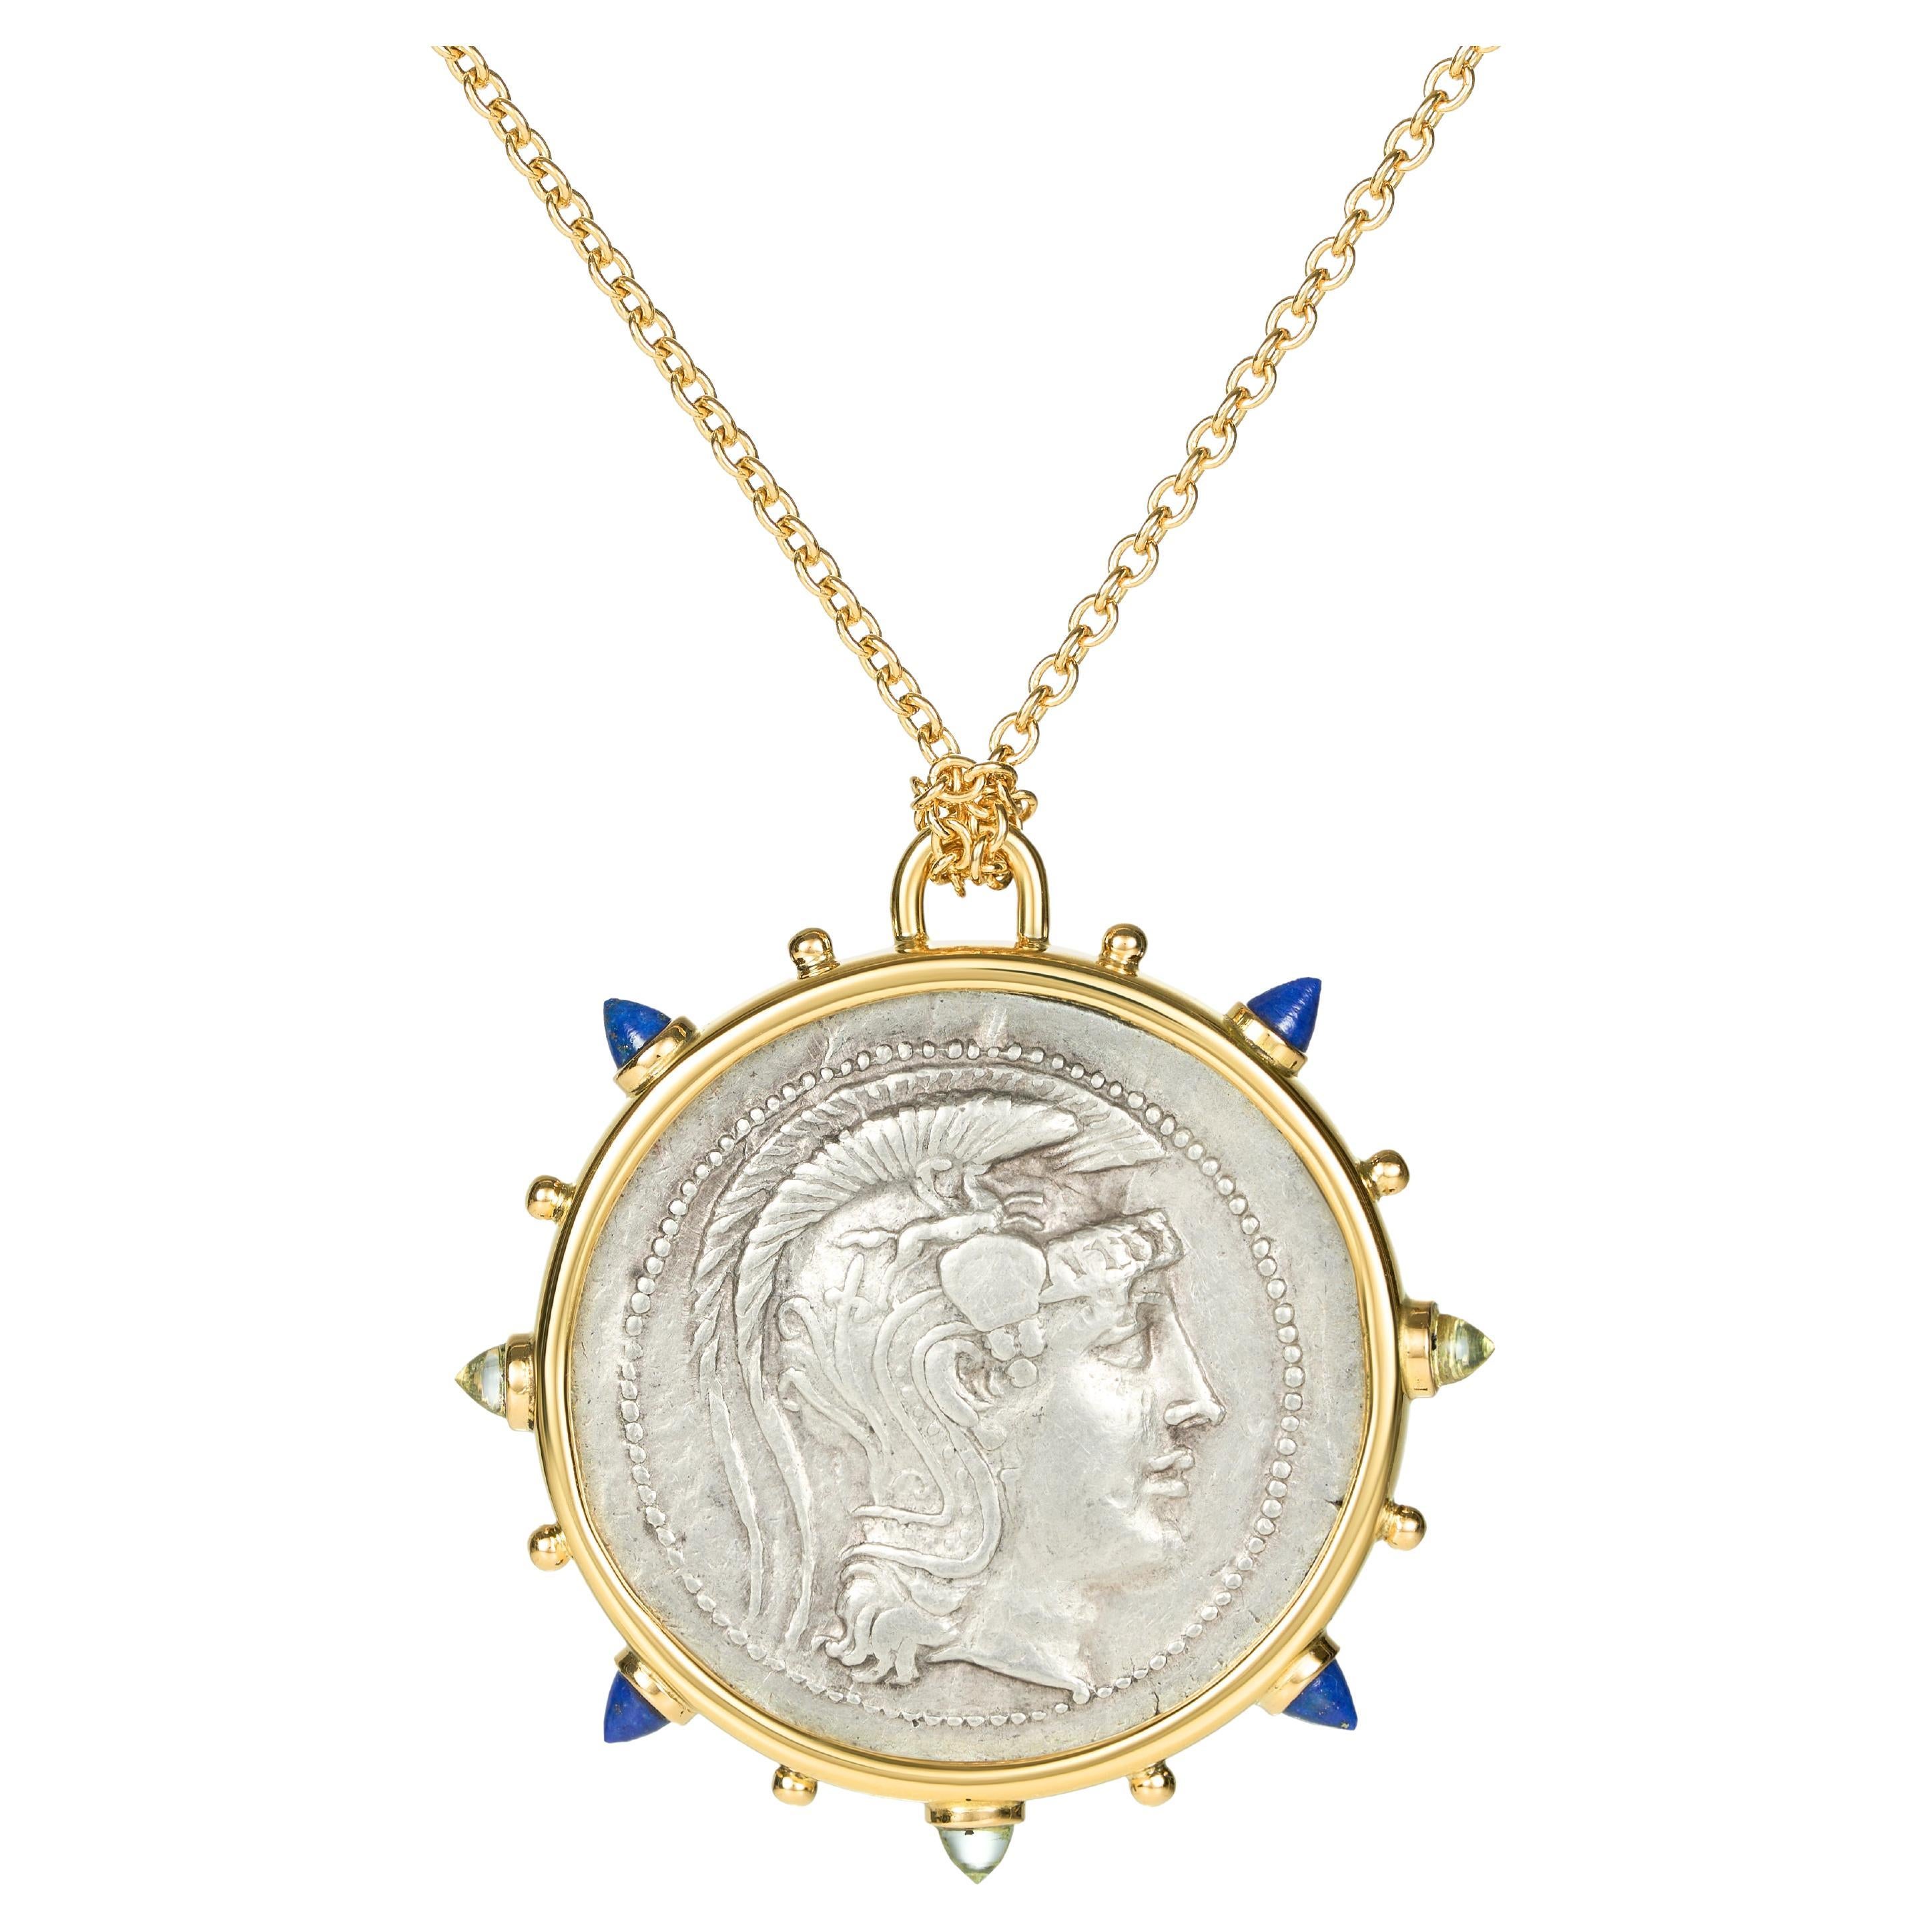 Athena Attica Halskette aus 18 Karat Gelbgold mit antiker Silbermünze und Medaillon und Lapislazuli